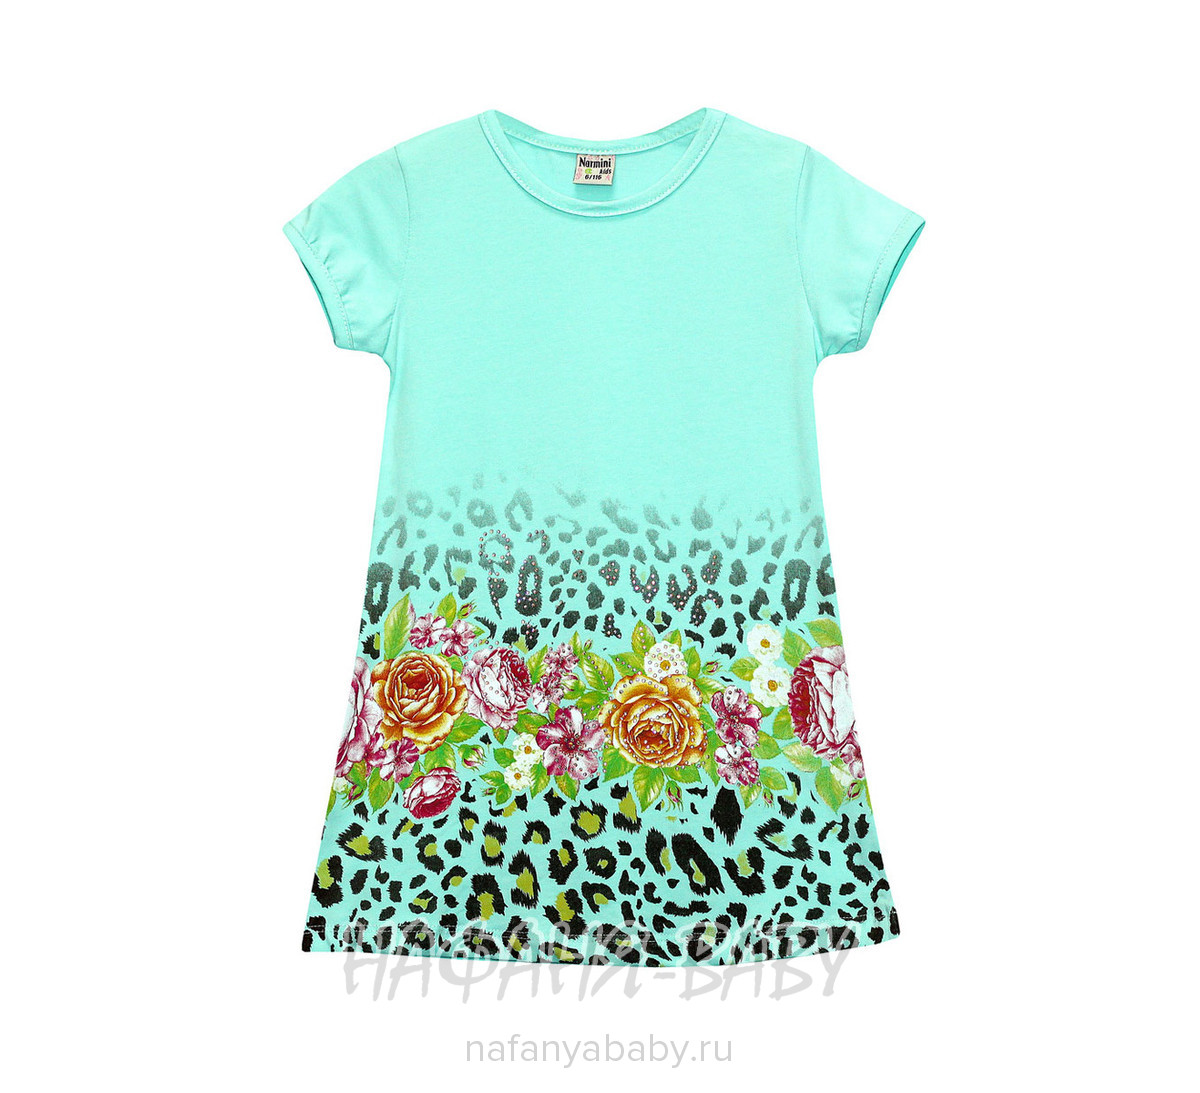 Детское платье NARMINI, купить в интернет магазине Нафаня. арт: 5517.